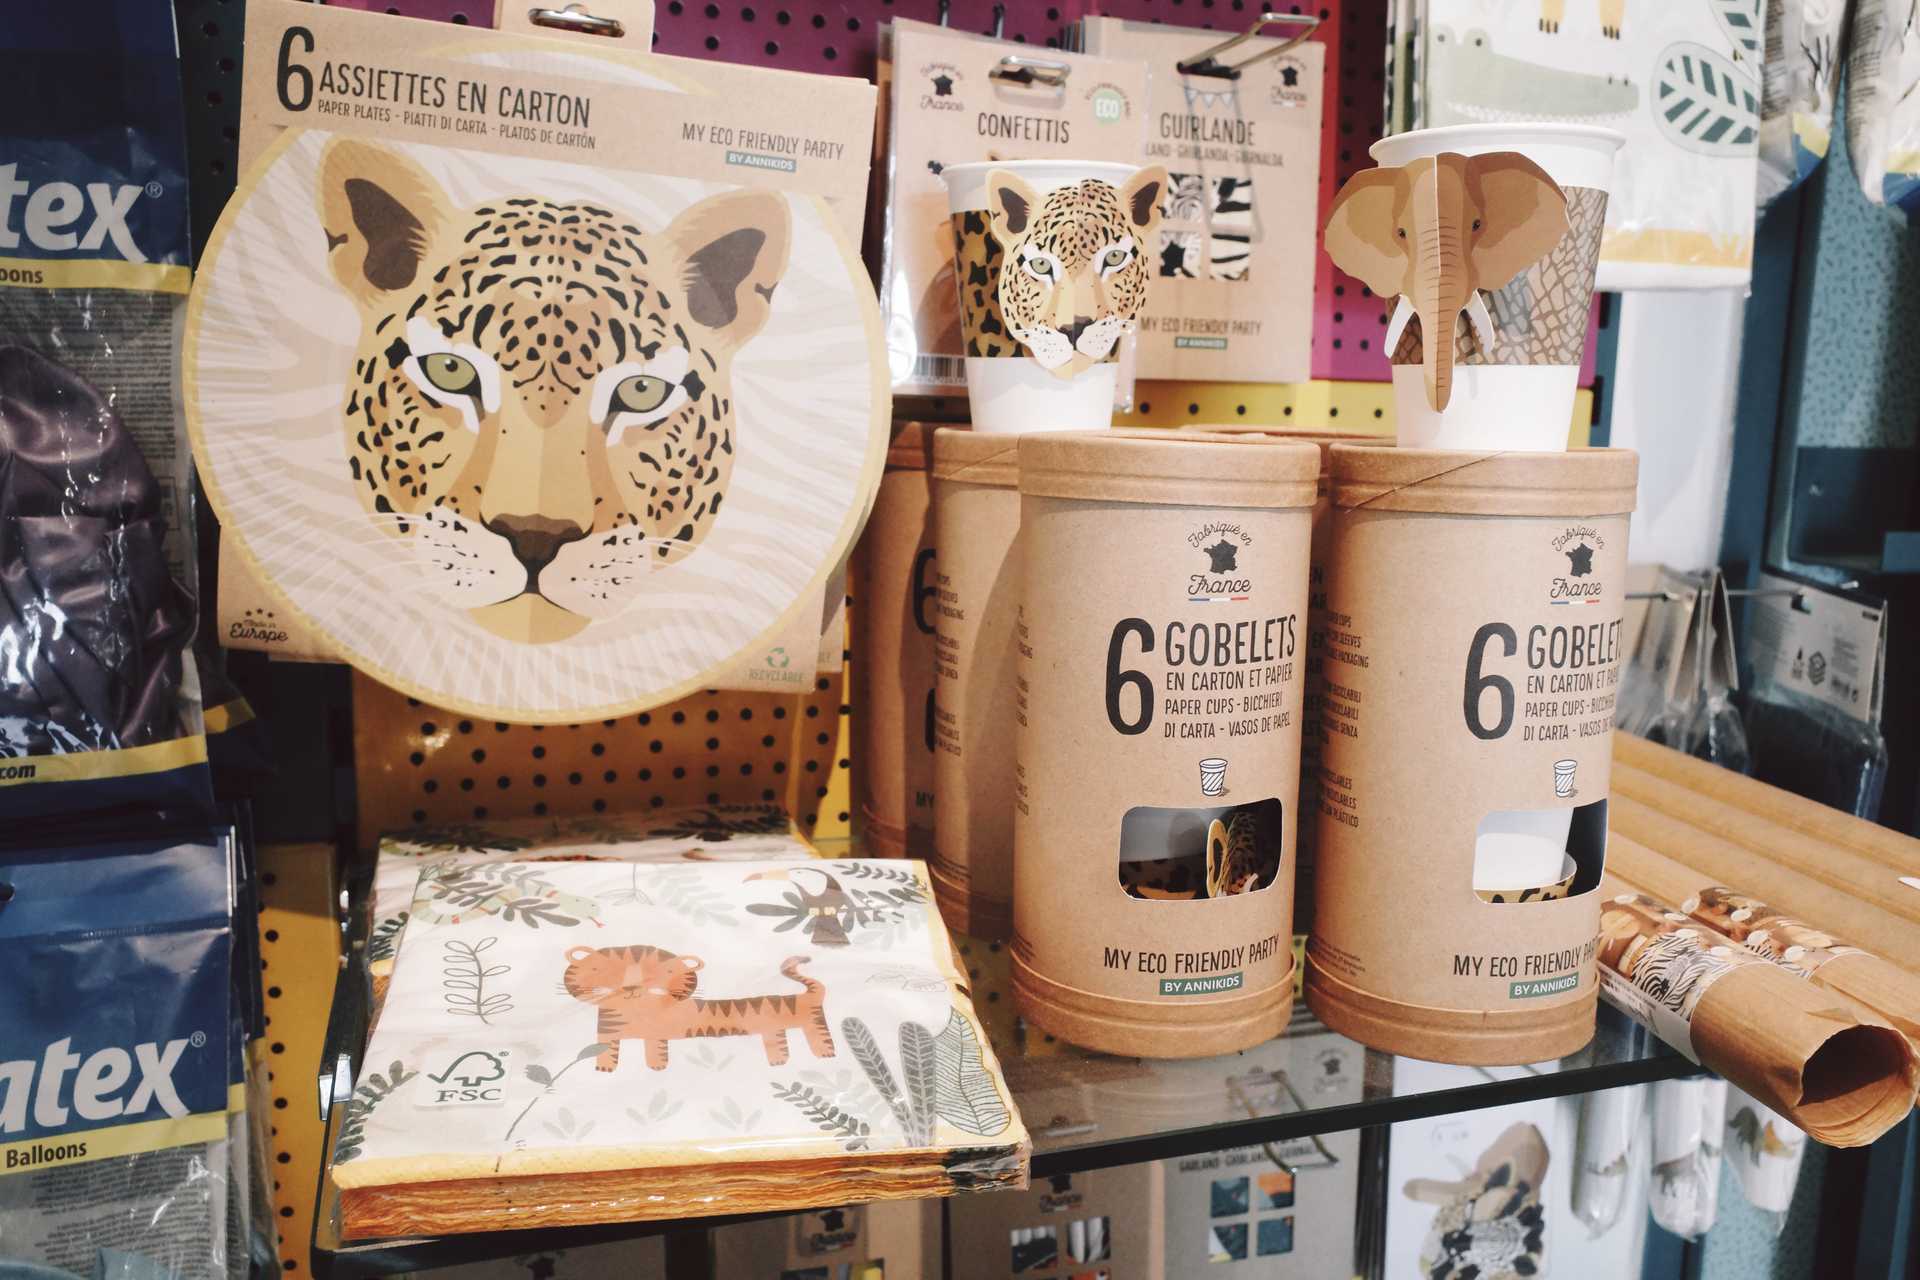 Tierpapierservietten, Papiertücher und Becher auf einem Ausstellungstisch in Wien